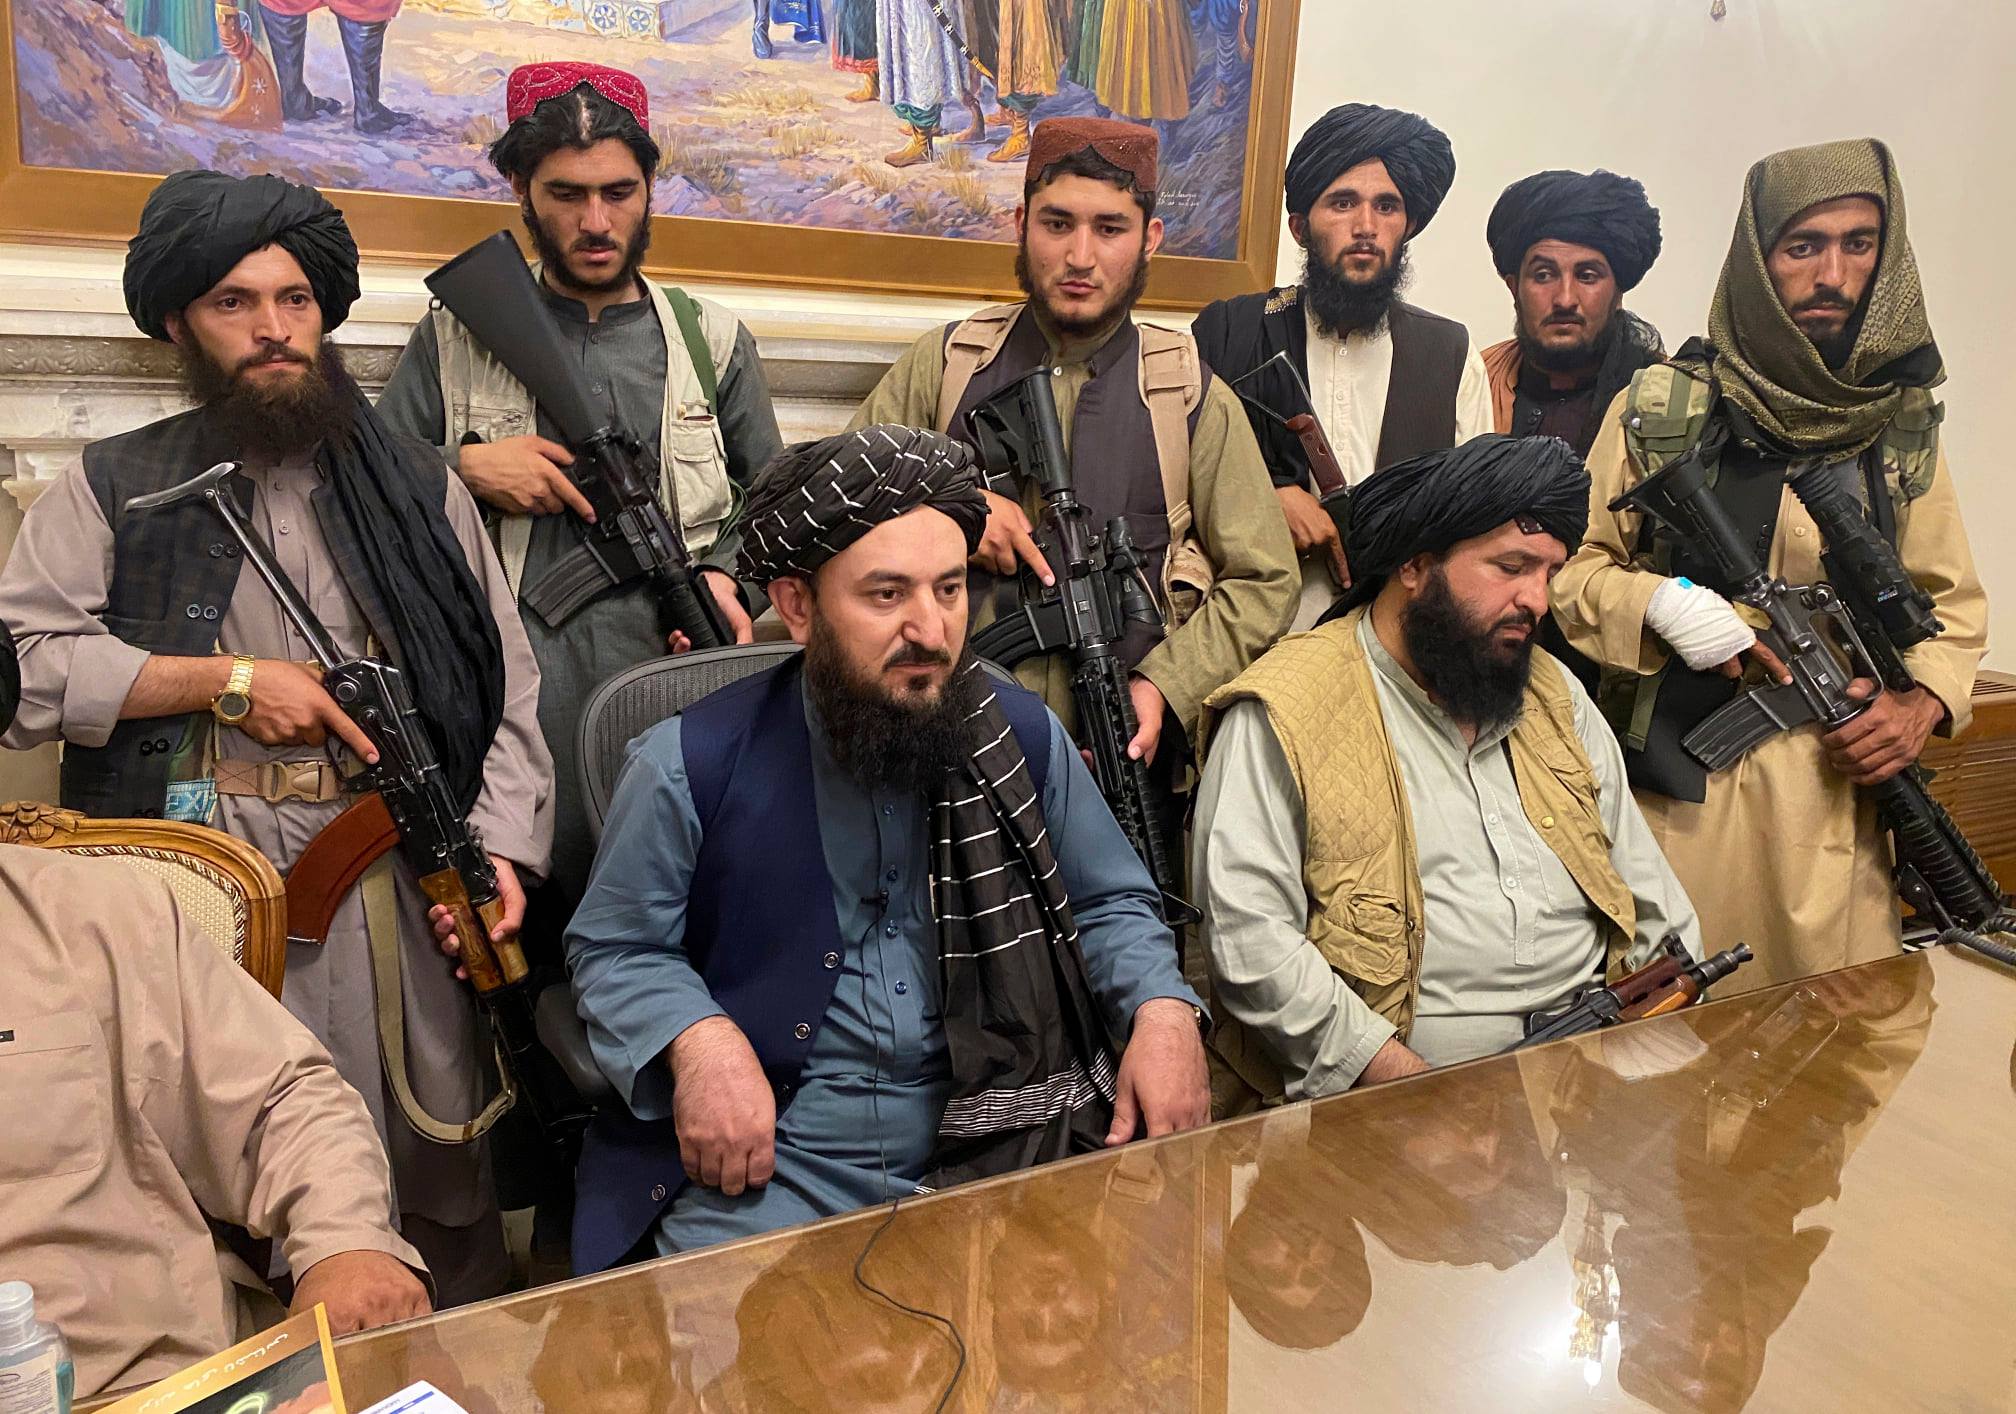 Talibanii s-au luat la bătaie în palatul prezidențial. BBC: nemulțumiri la împărțirea puterii în noul guvern